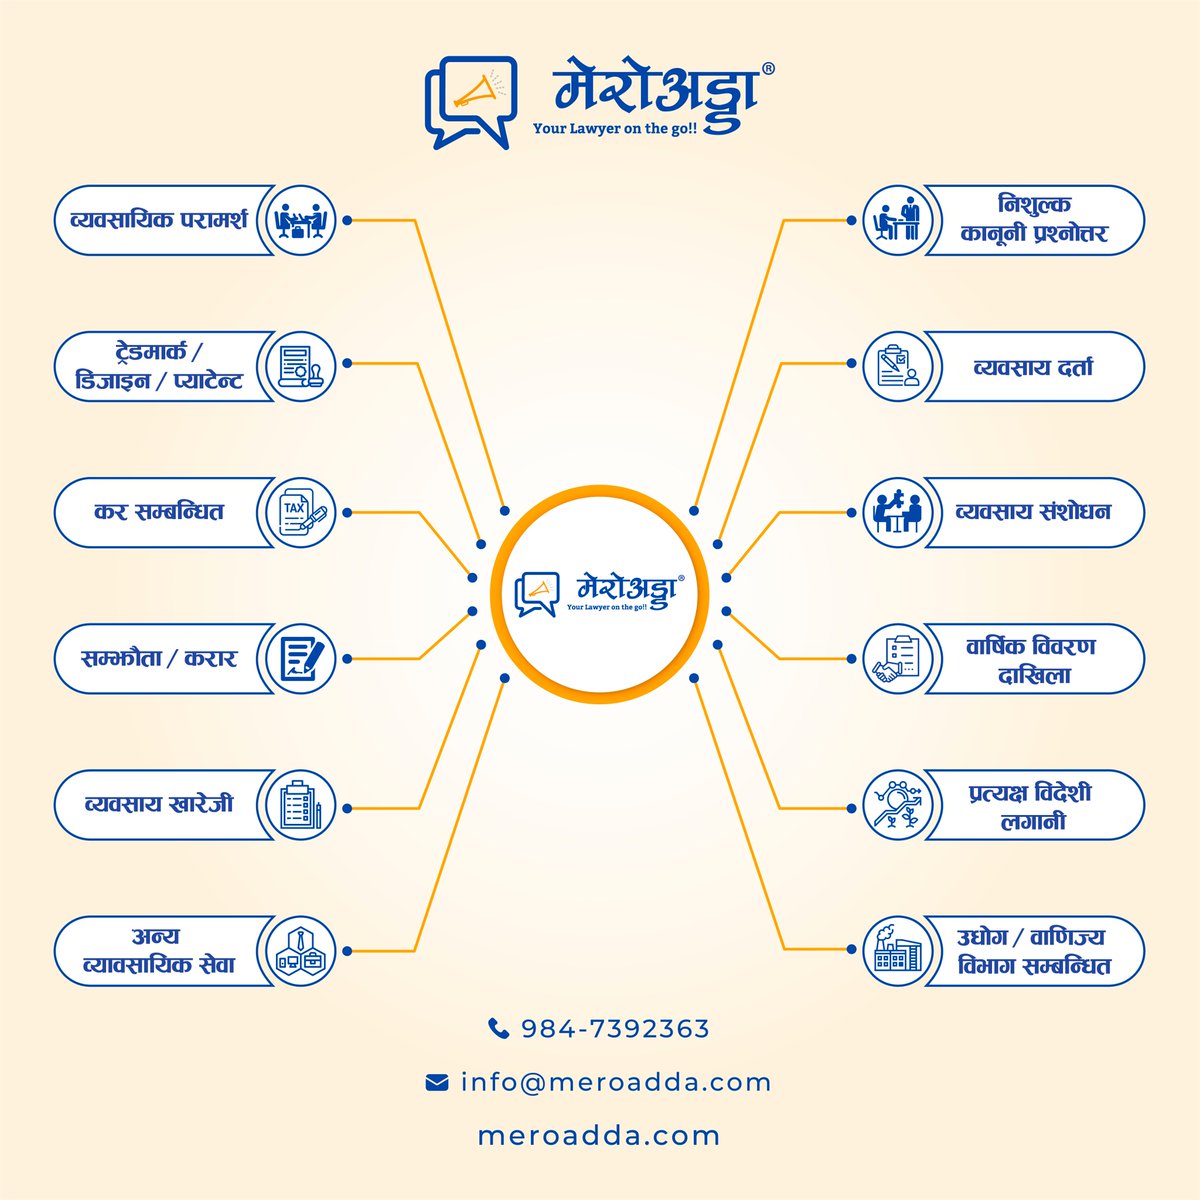 सम्पूर्ण व्यावसायिक सेवाहरू, एकै ठाउं बाट !

#ProfessionalServices #CorporateServices #legal #Nepal